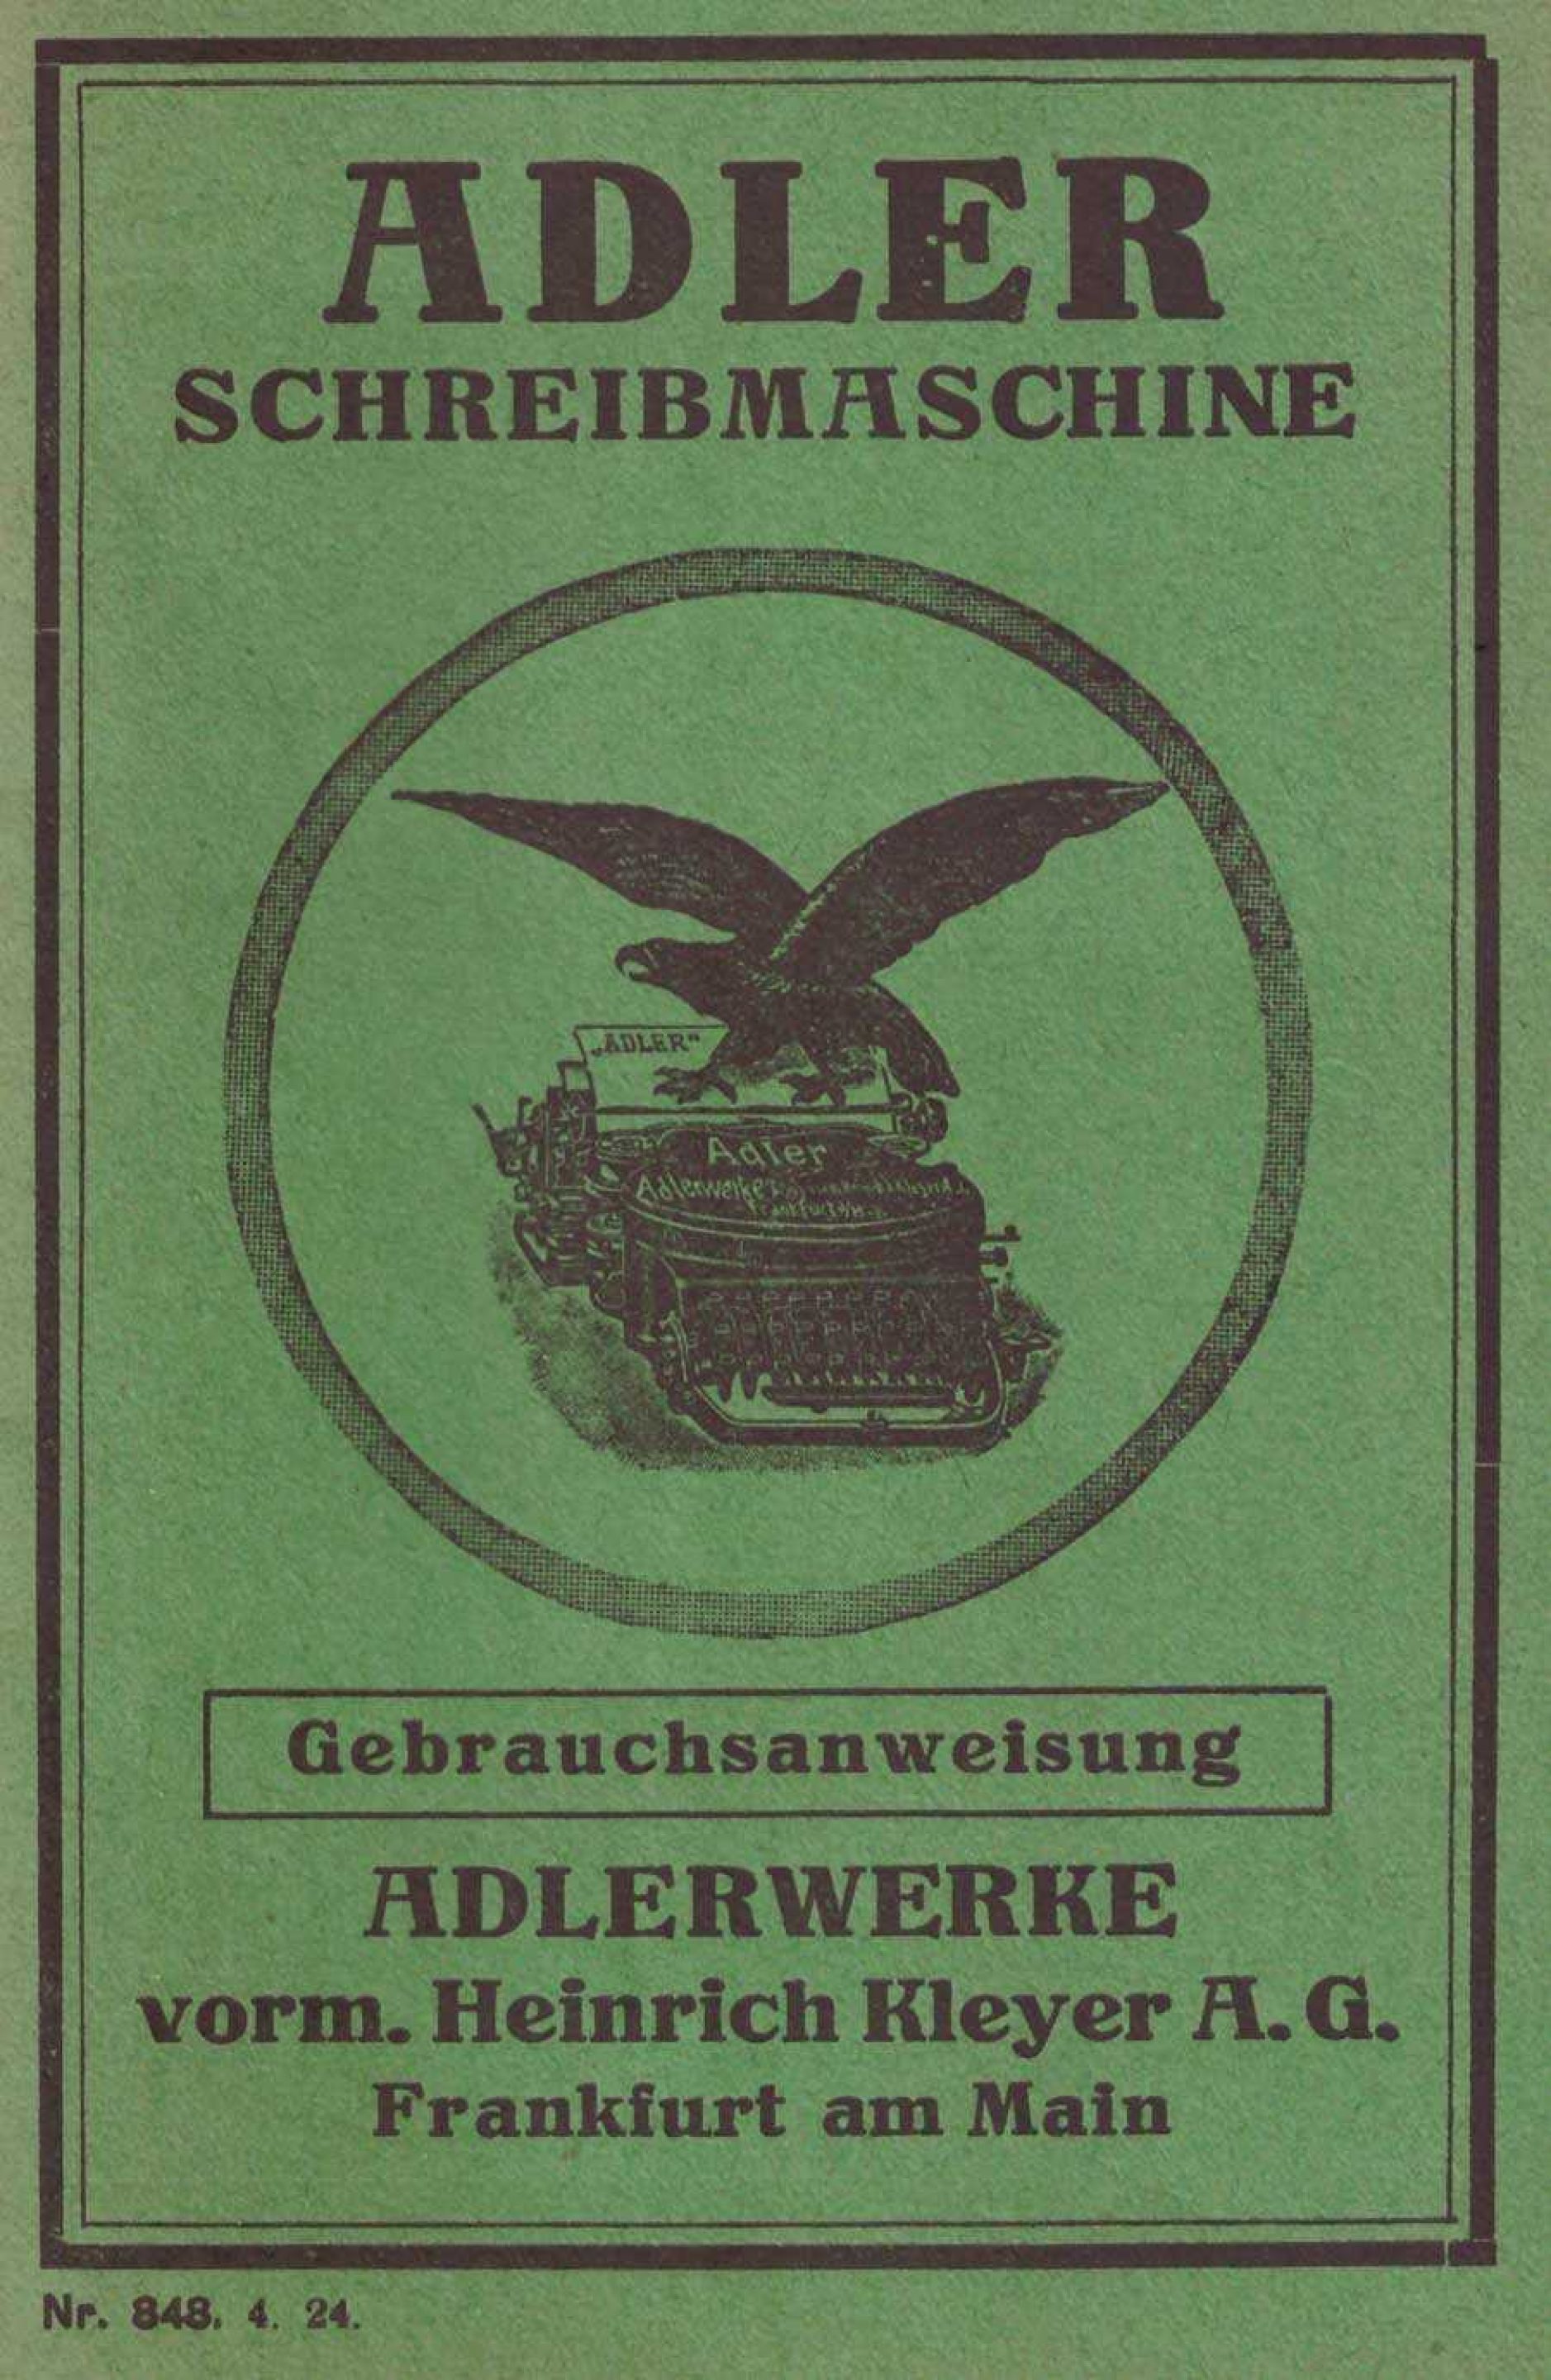 Adler Katalog Schreibmaschine web